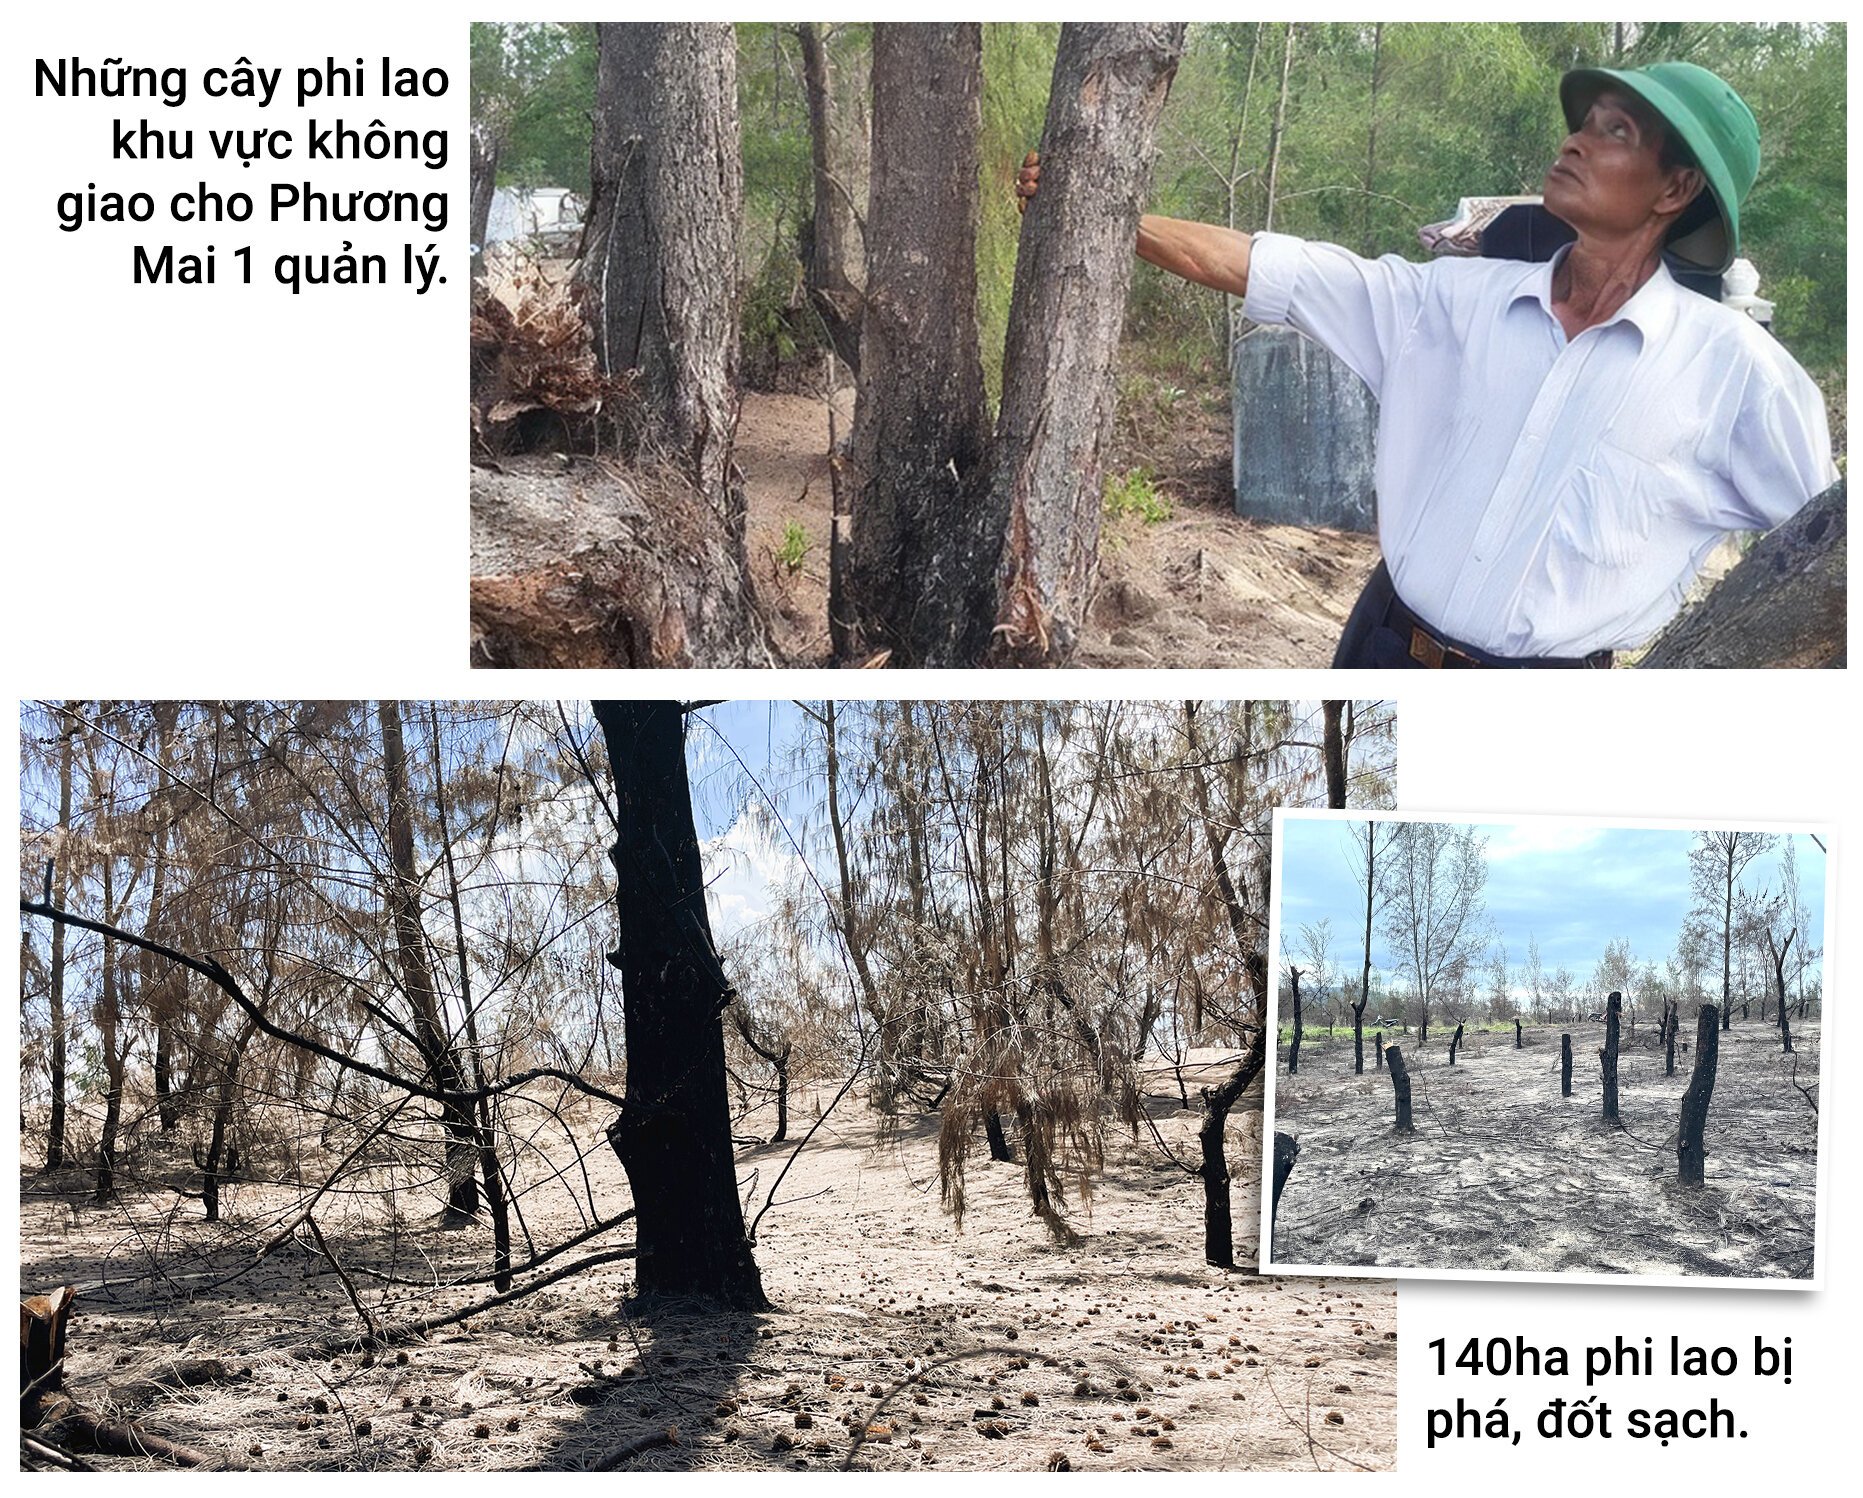 Rừng phòng hộ 'chết oan' ở Bình Định: Phá rừng để phát triển kinh tế? - 6